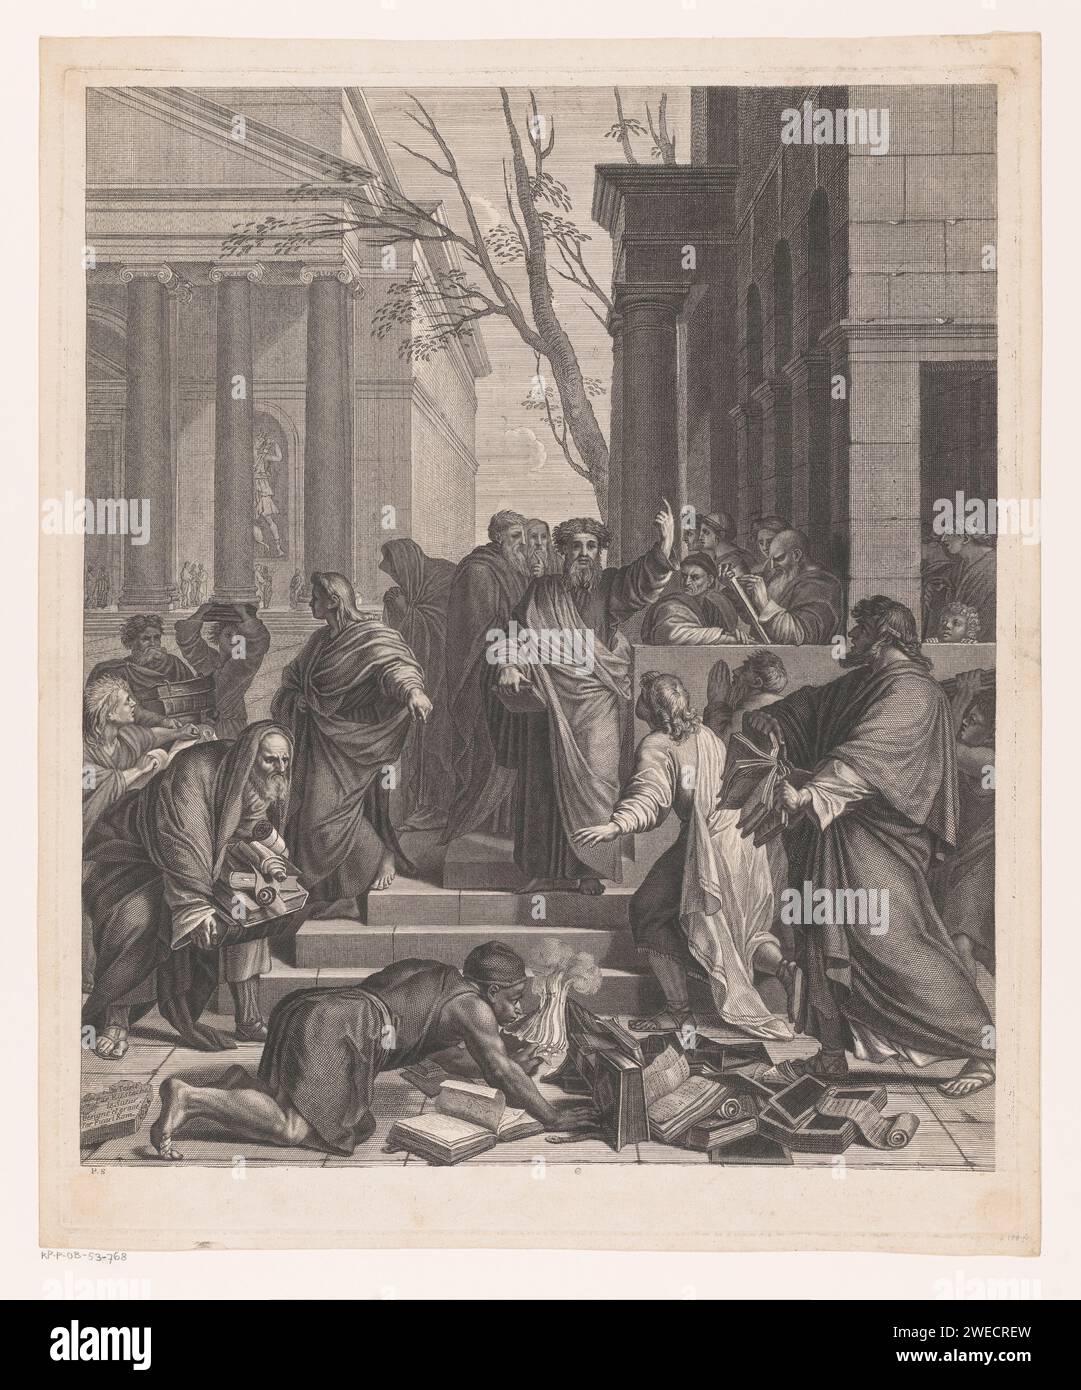 Prediking van Paulus Te Ephese, Etienne Picart, nach Eustache Lesueur, 1686 Druckpapier Gravur / Radierung der Epheser brennen die Bücher der Exorzisten in der Öffentlichkeit Stockfoto